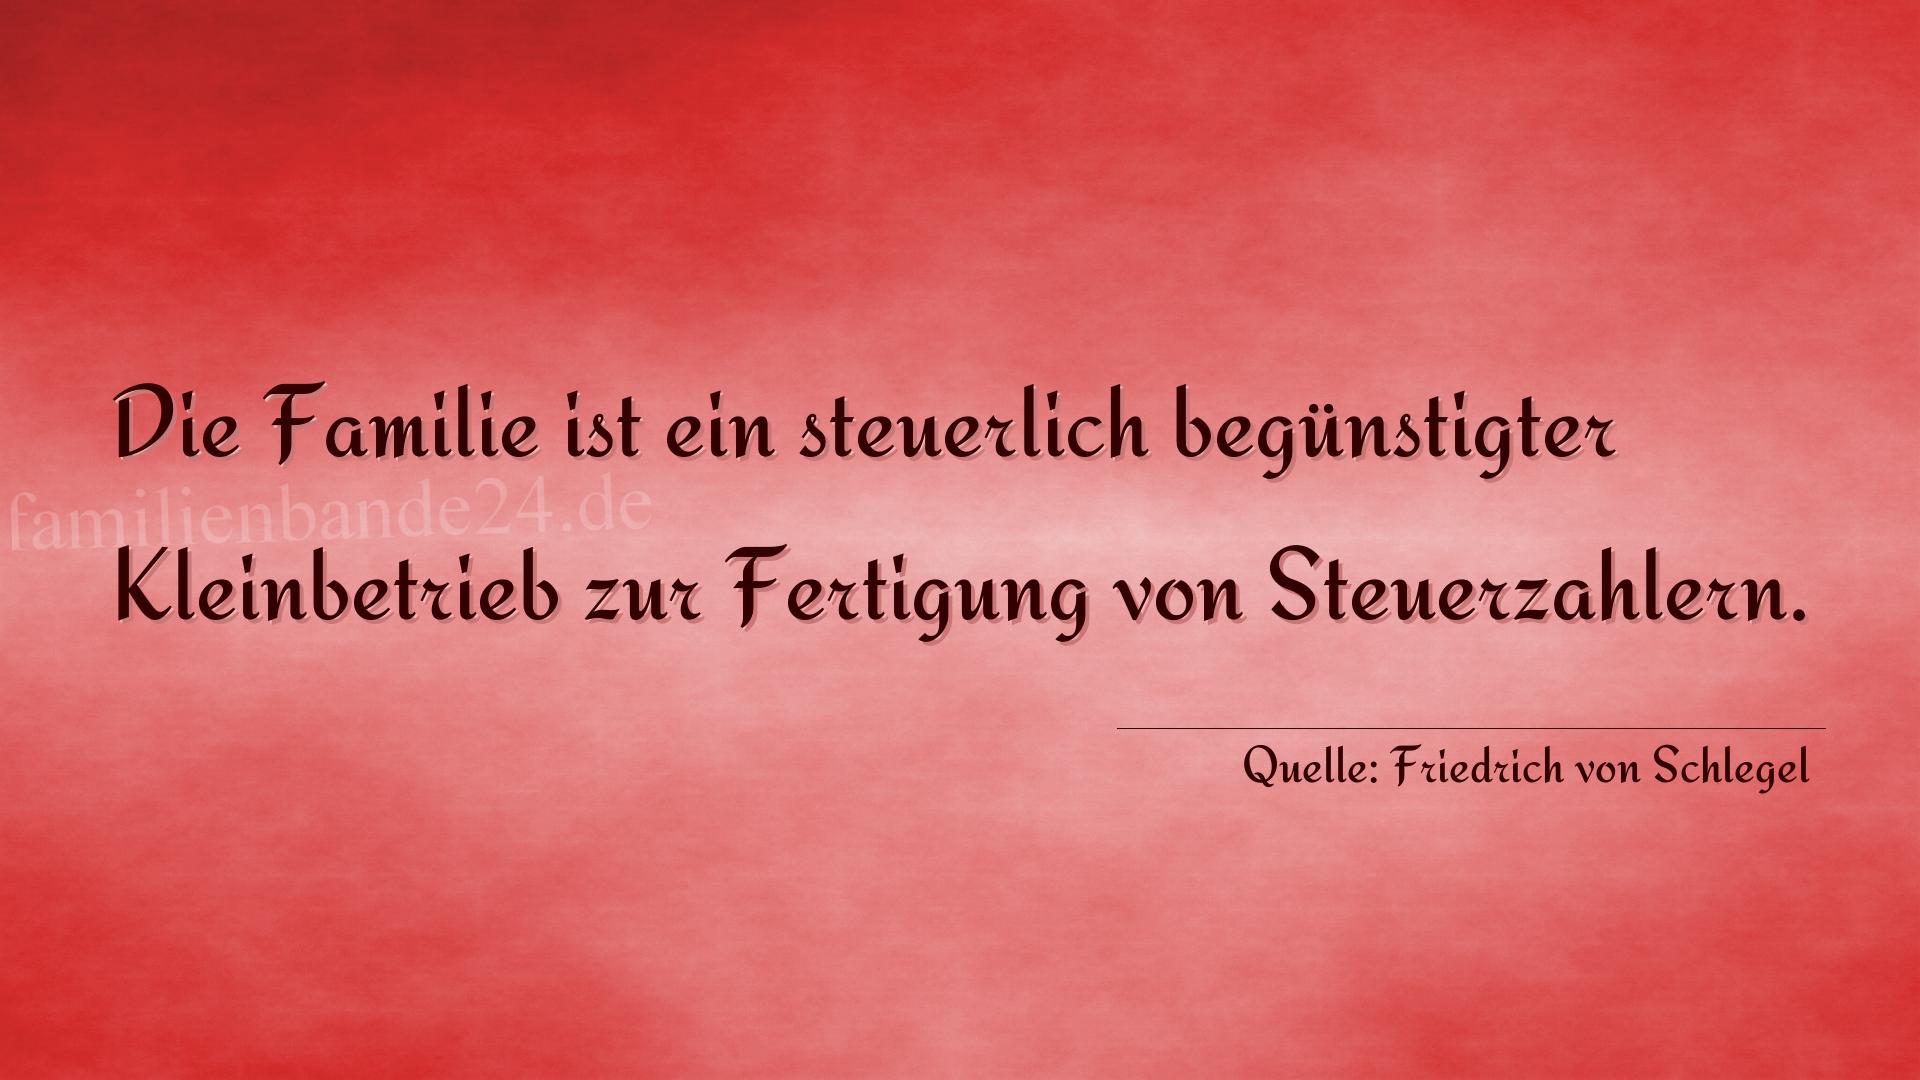 Vorschaubild  zu Spruch  Nr. 355  (von Friedrich von Schlegel)